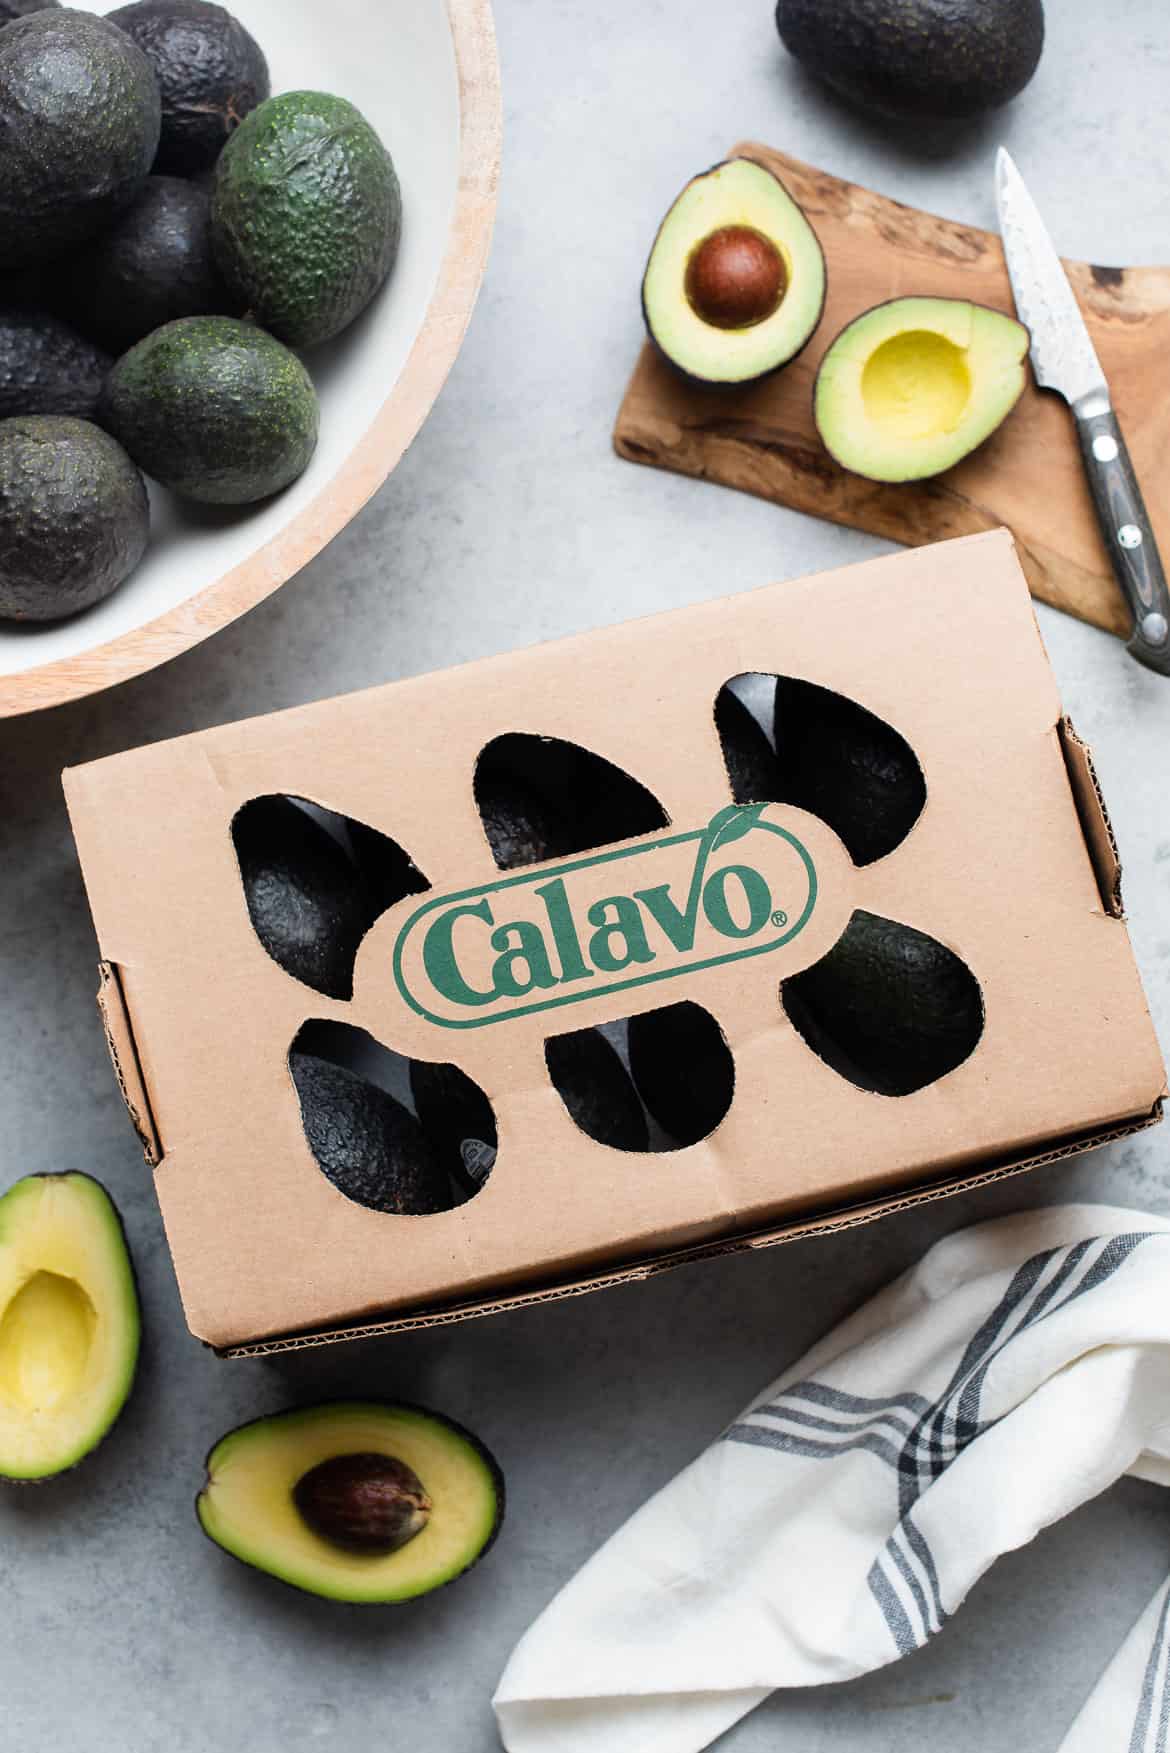 A box of Calavo Avocados